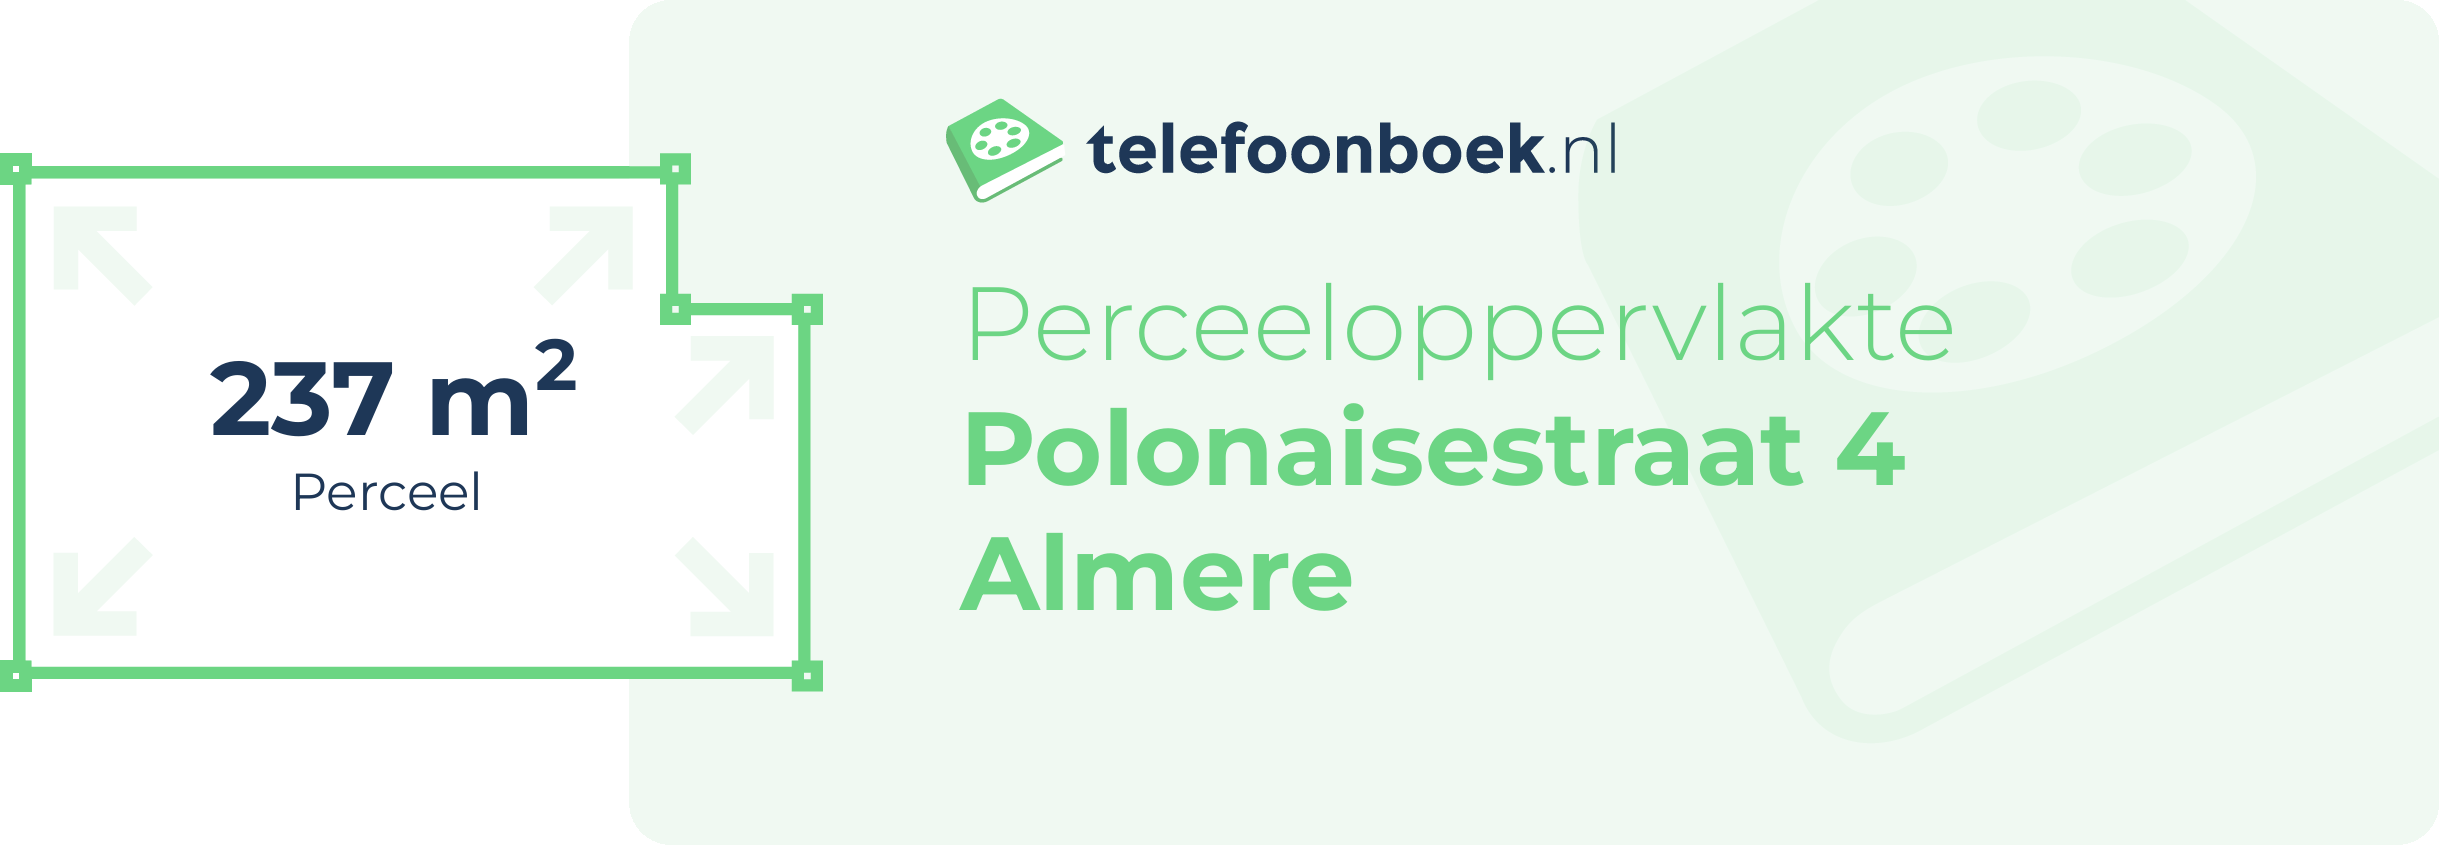 Perceeloppervlakte Polonaisestraat 4 Almere